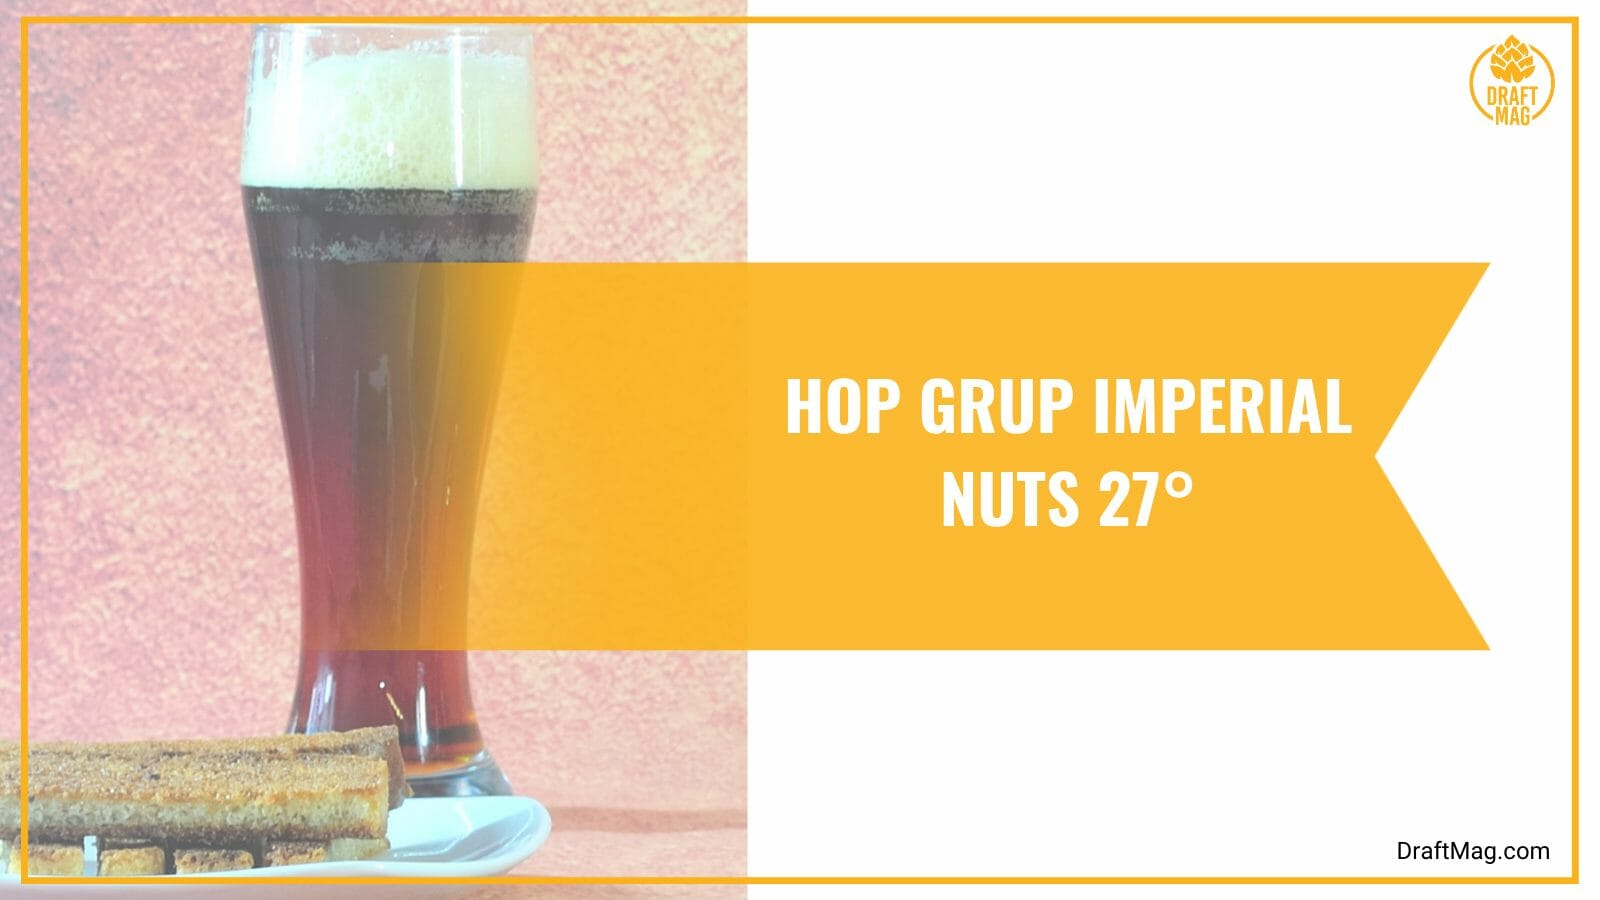 Hop Grup Imperial Nuts 27 Celcius